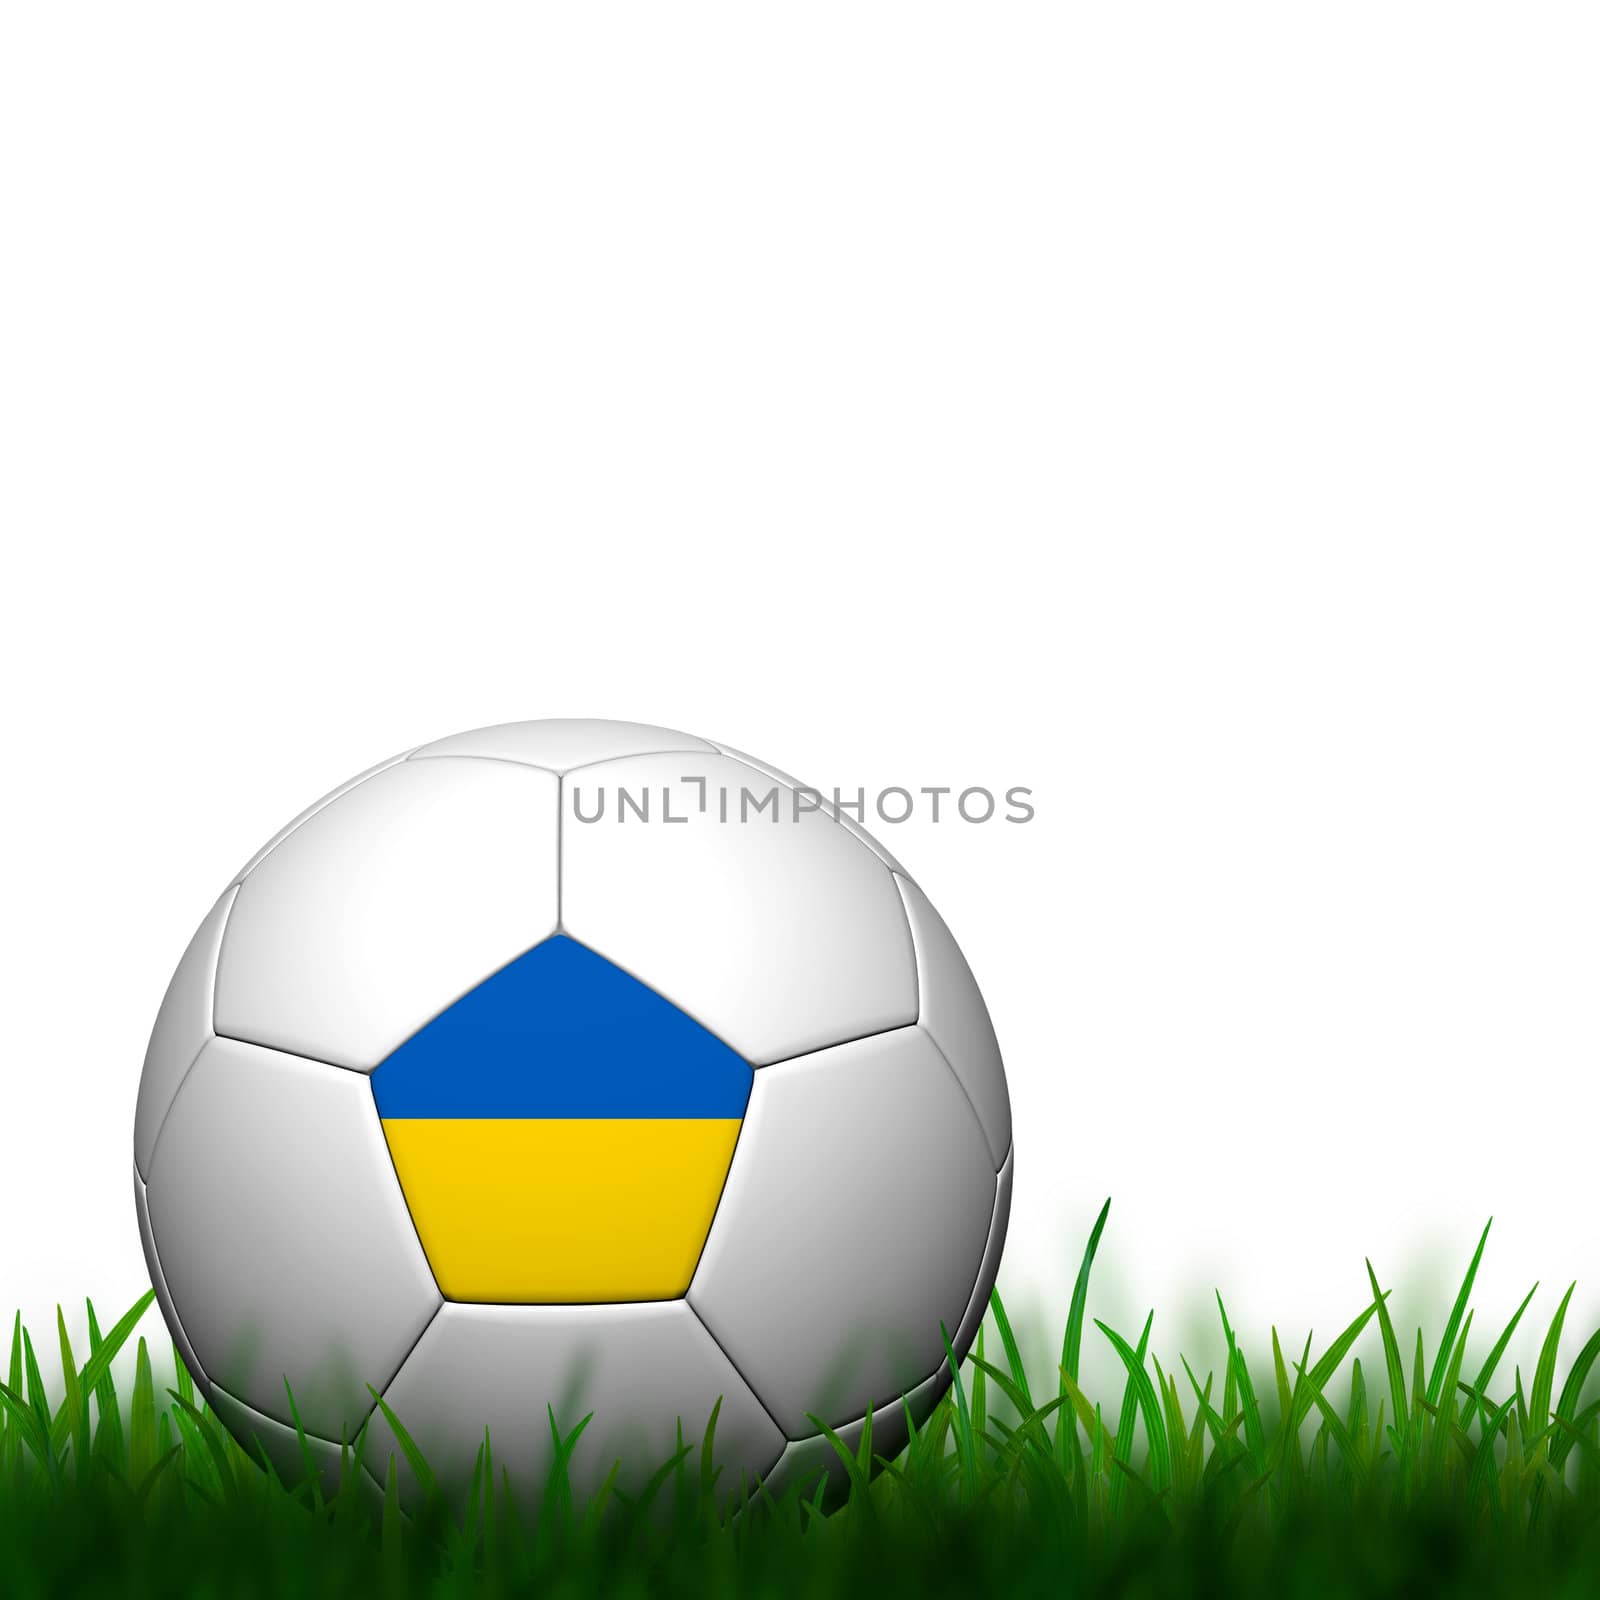 3D Football Ukraine Flag Patter in green grass on white backgrou by jakgree